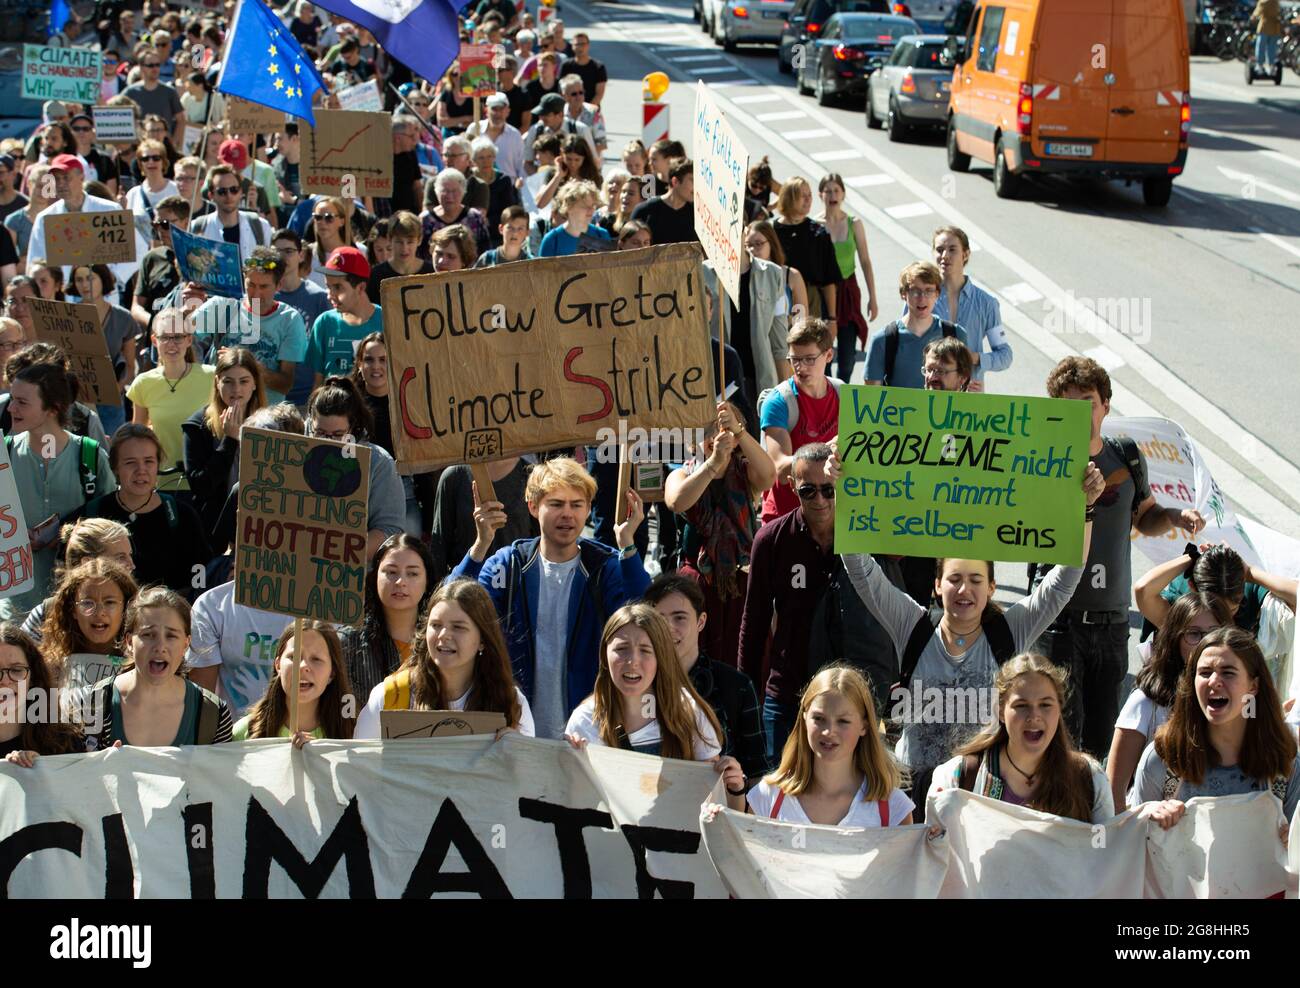 Am 13. September 2019 haben einige Hundert junge Menschen für eine bessere Klimapolitik demonstriert. Sie riefen auch zum globalen Klimastreik in einer Woche auf. (Photo by Alexander Pohl/Sipa USA) Credit: Sipa USA/Alamy Live News Stock Photo